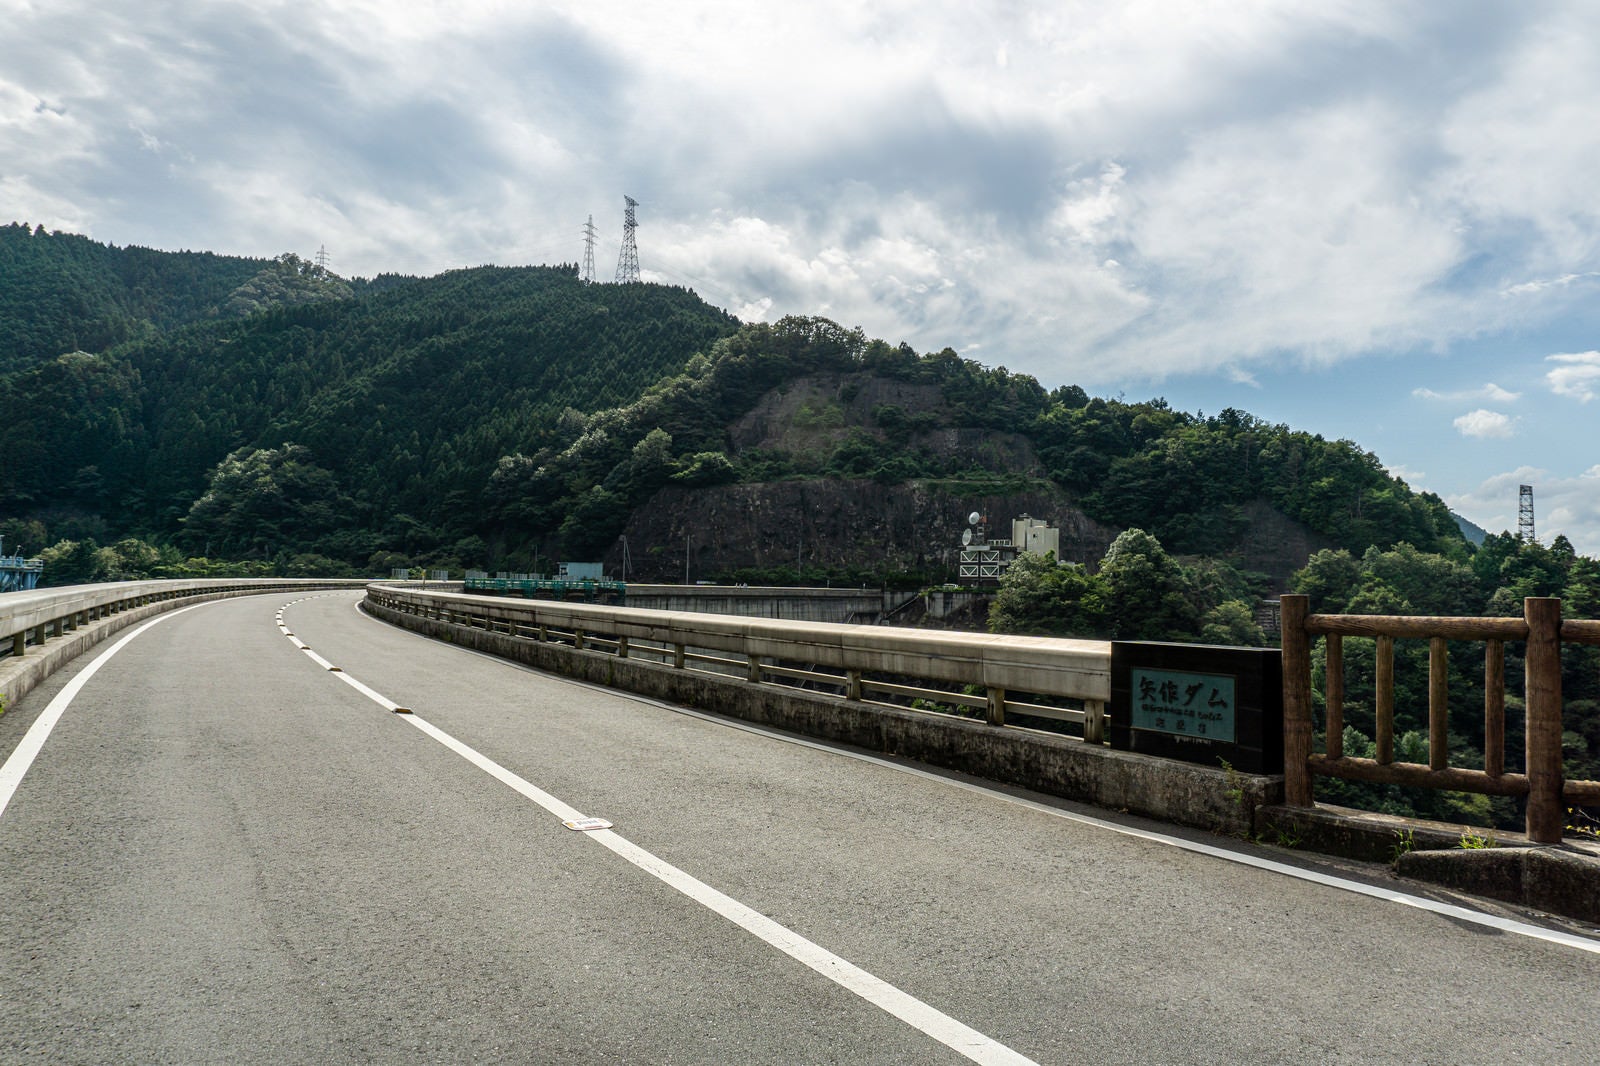 「アーチ式ダムの緩く弧を描く天端を走る県道とダム名が刻まれた親柱」の写真